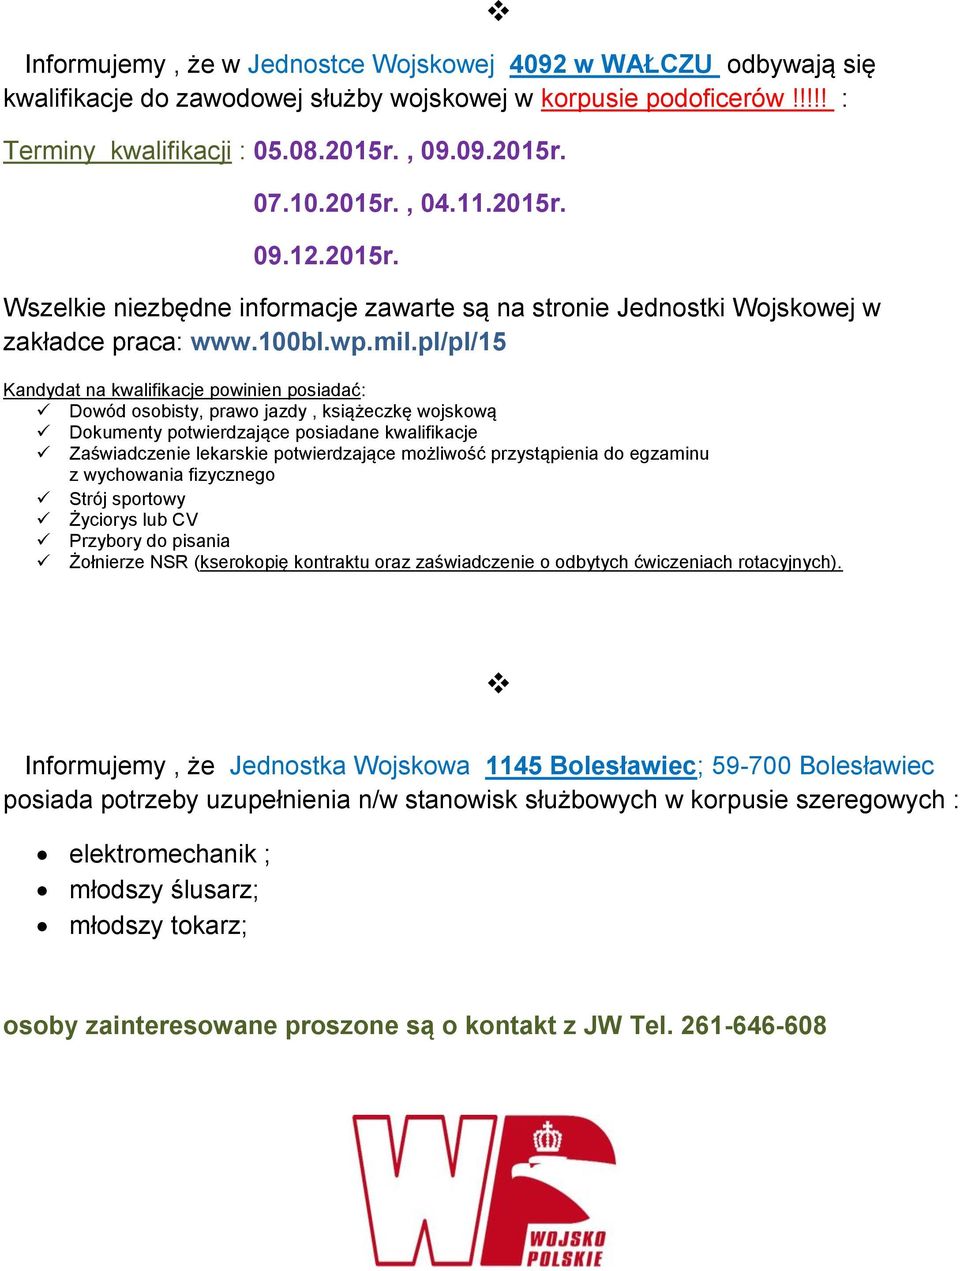 pl/pl/15 Dowód osobisty, prawo jazdy, książeczkę wojskową Dokumenty potwierdzające posiadane kwalifikacje Zaświadczenie lekarskie potwierdzające możliwość przystąpienia do egzaminu Strój sportowy